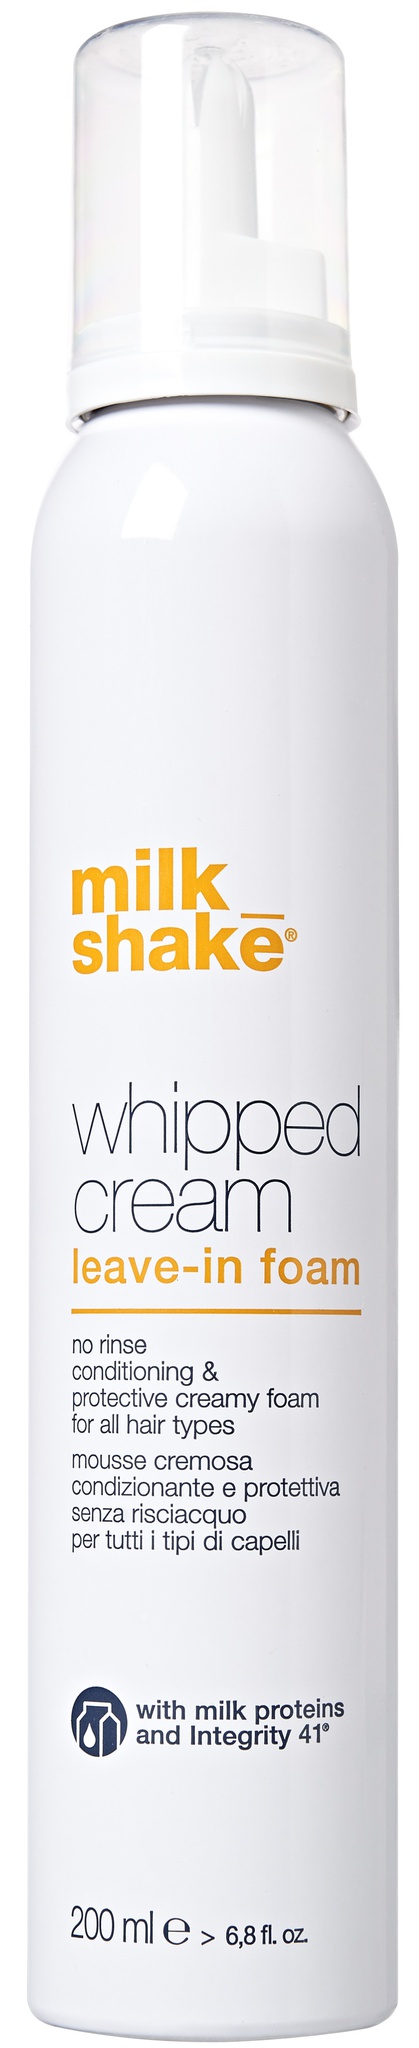 Milk shake Whipped Cream